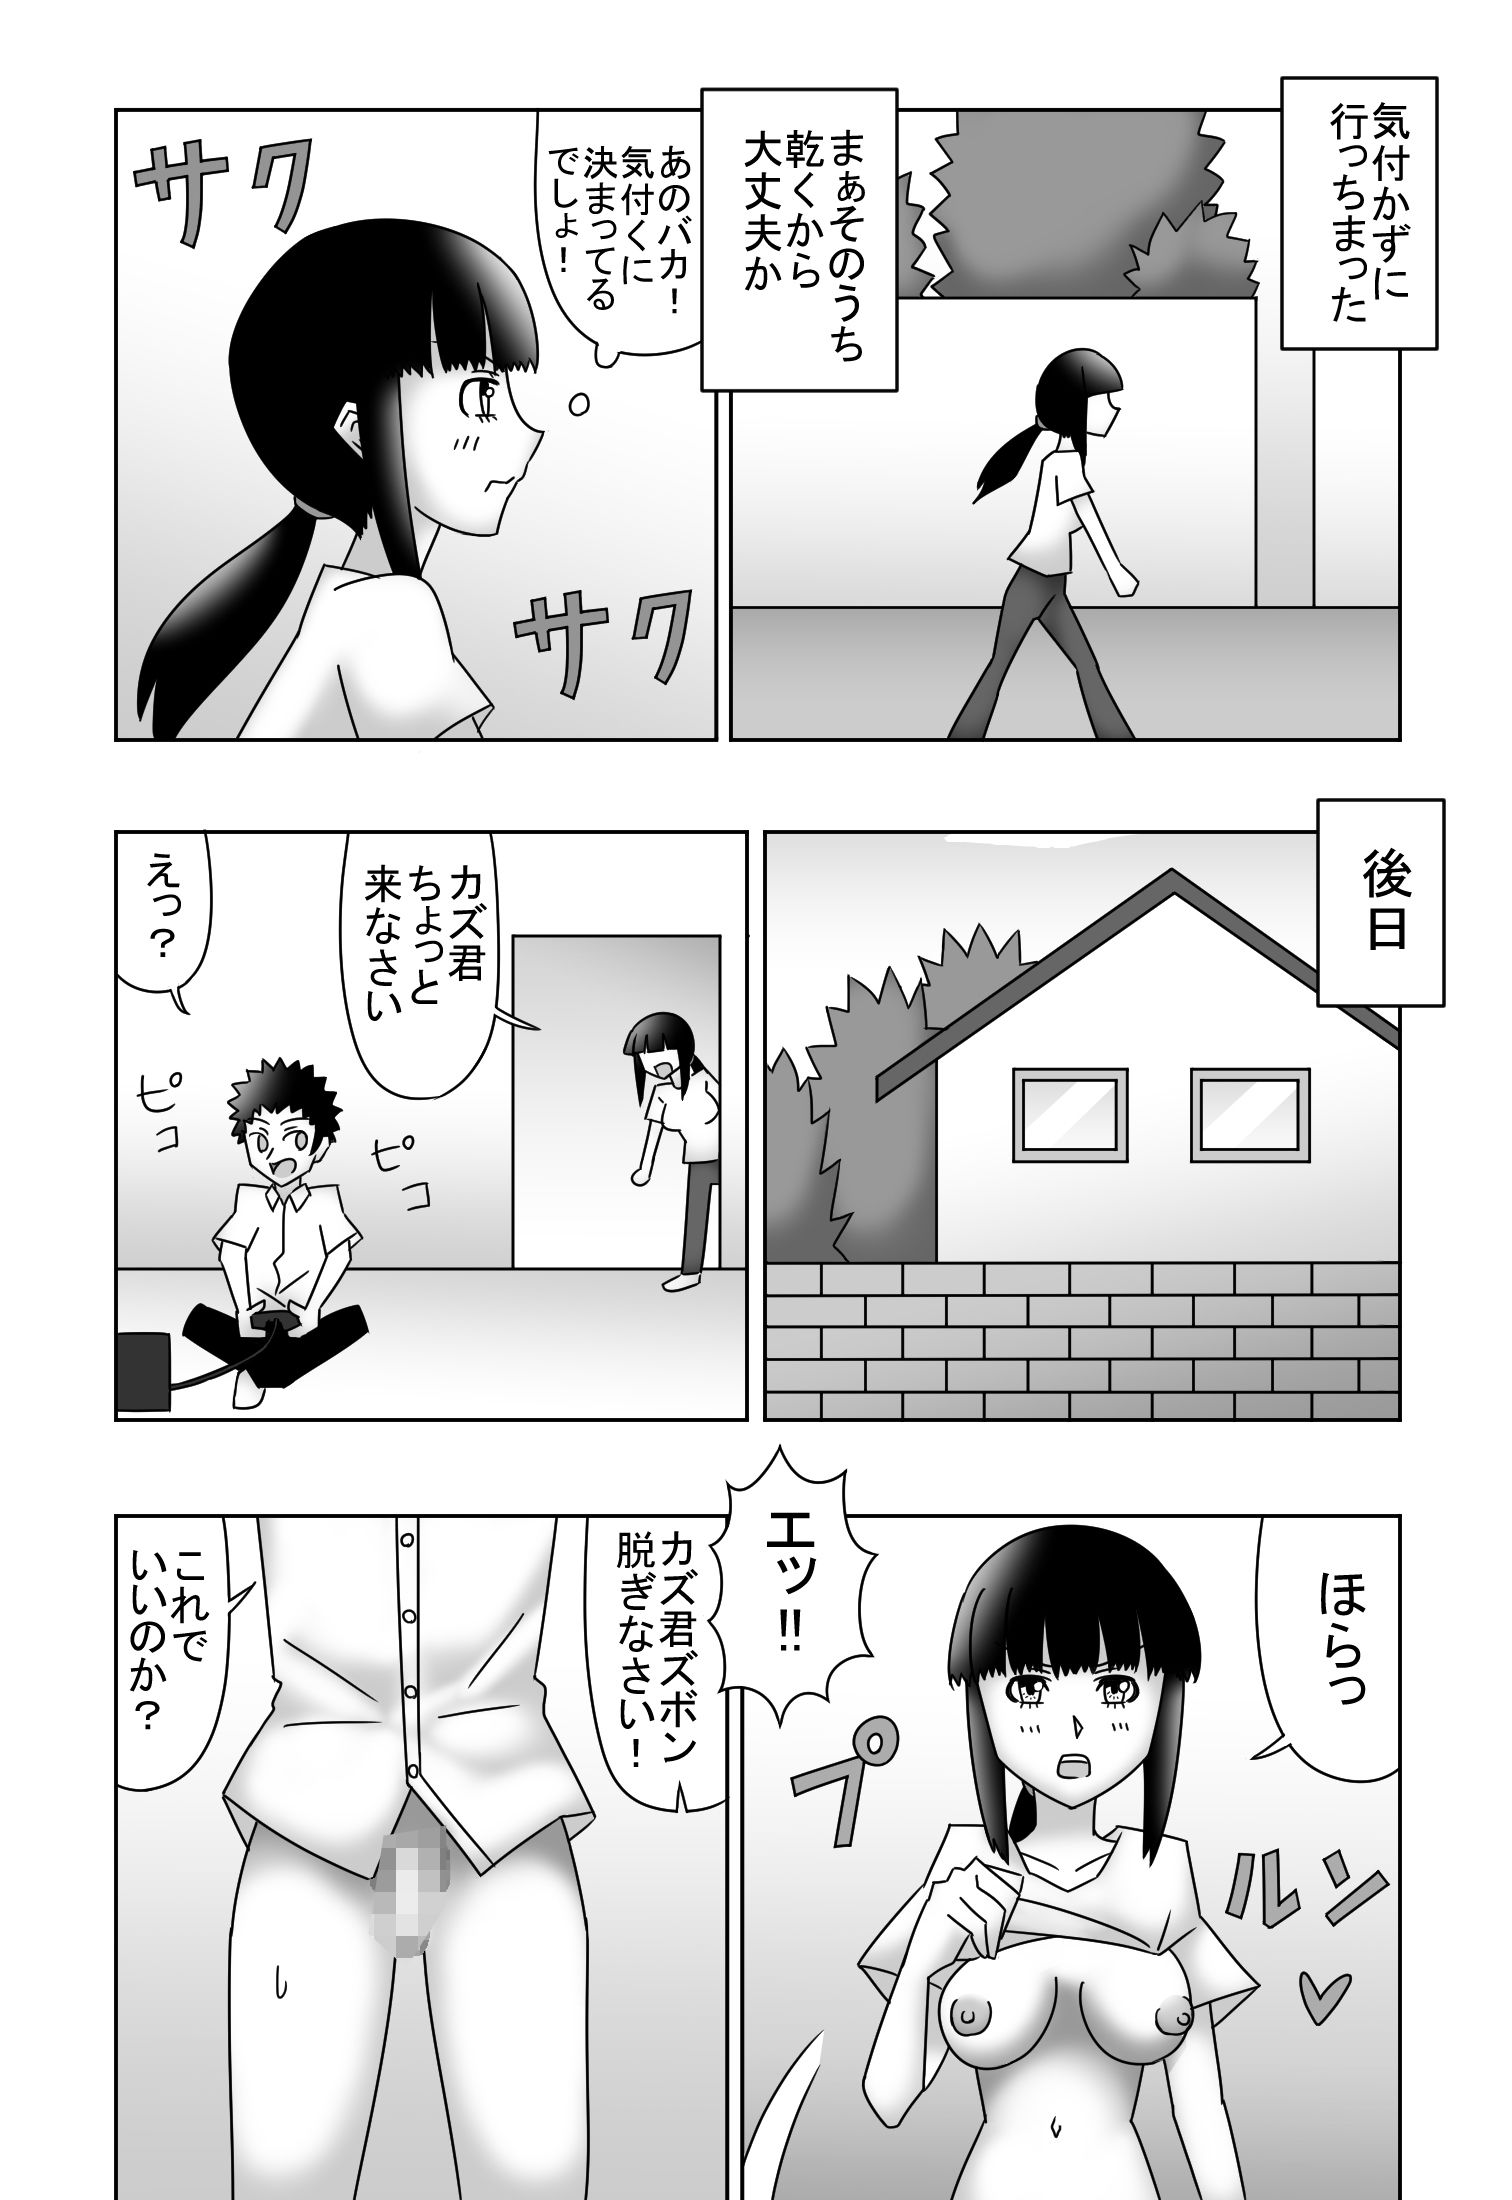 二重らせん構造の恋〜ザ・母子相姦〜5